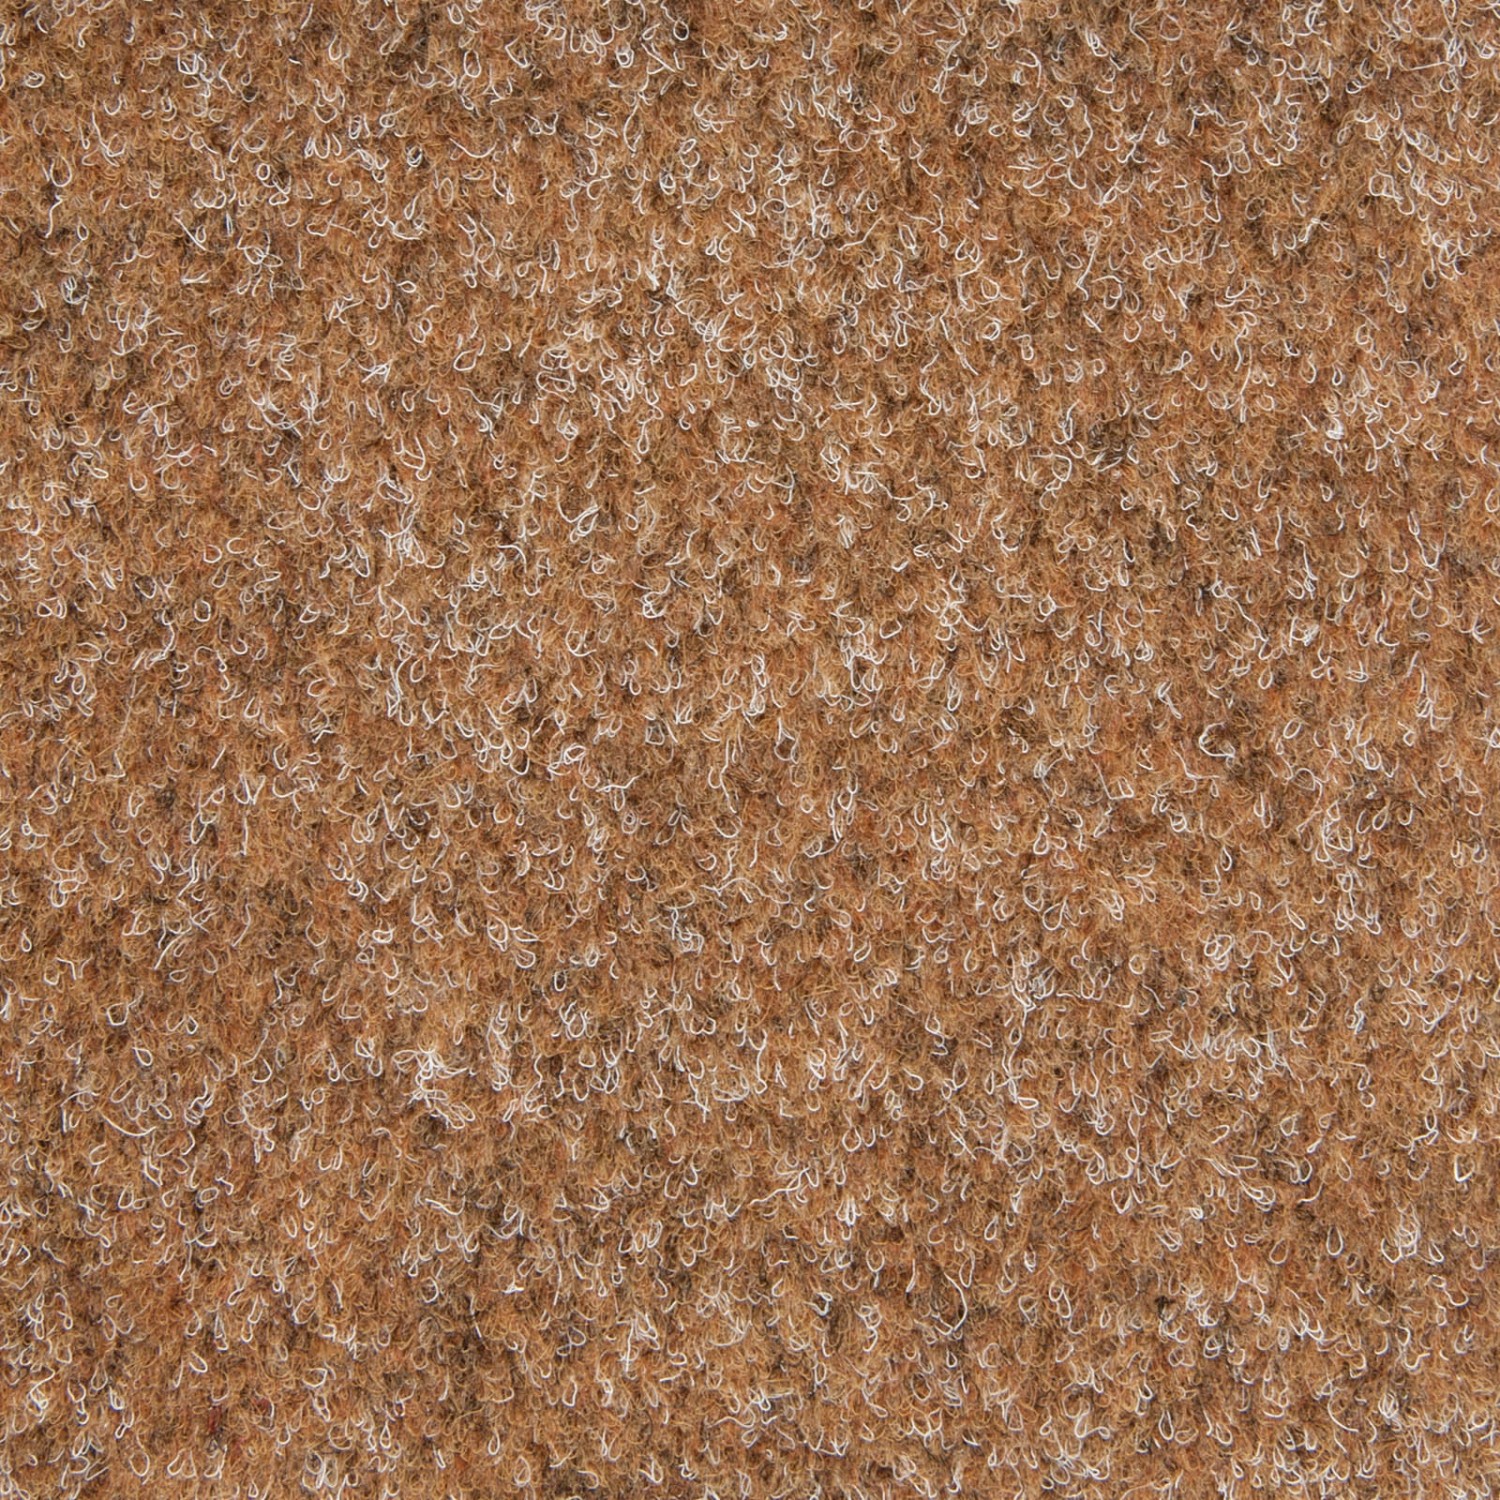 Nadelvlies Teppichboden Als Fliesen In 50x50 Cm Schatex Teppichfliesen Selbstliegend In Camel Nadelfilz Teppich Fliesen 